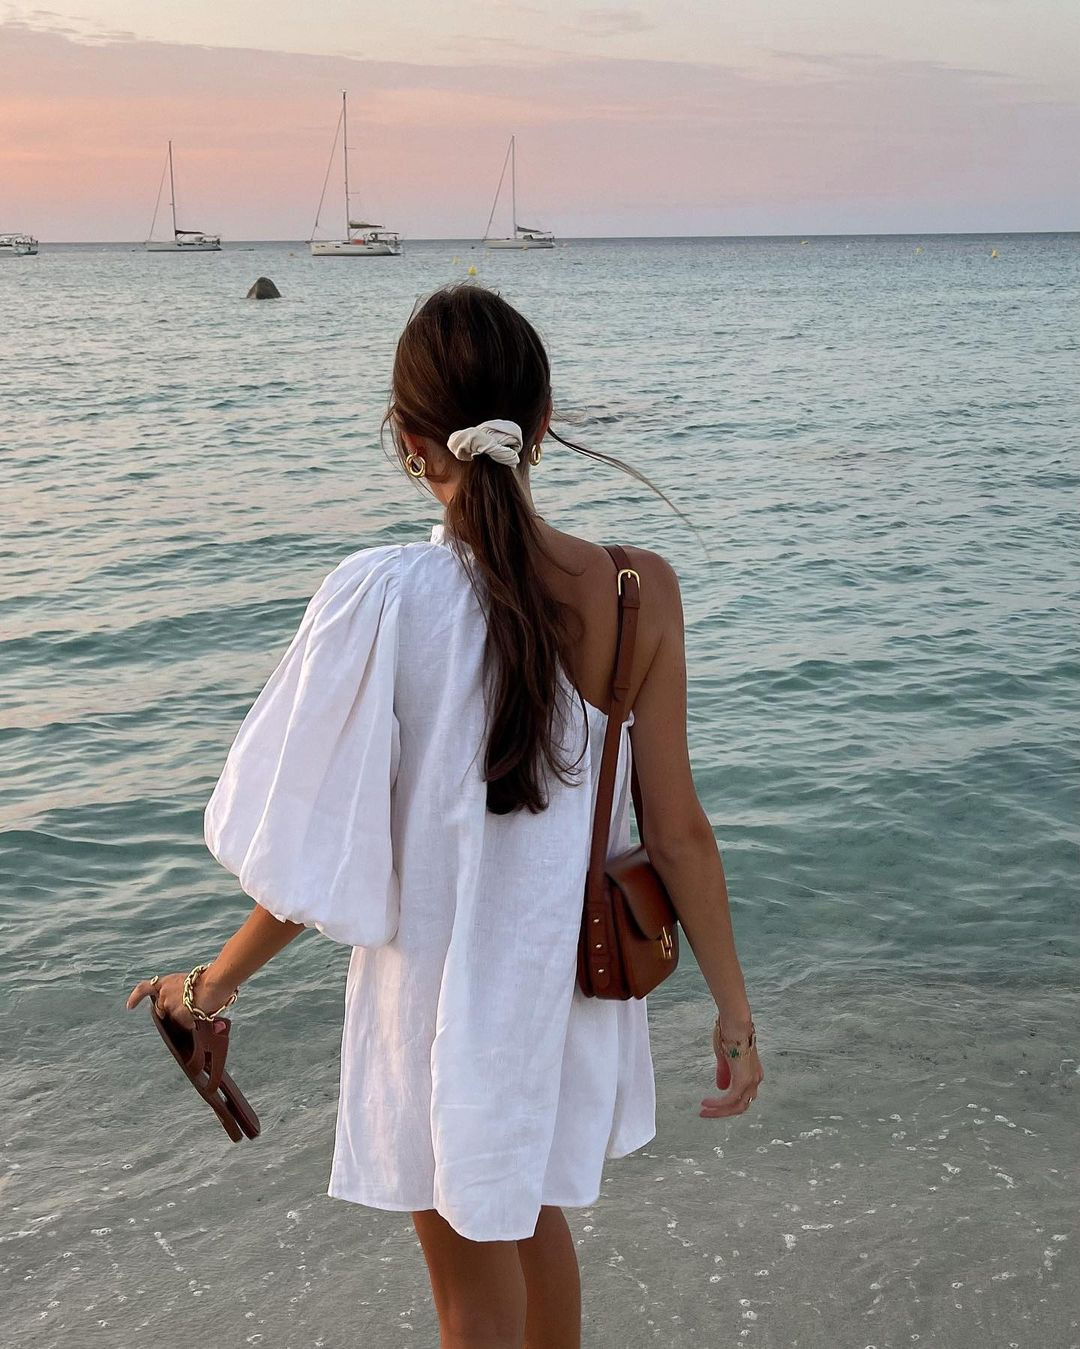 Tezza Barton'dan Viktoriia Bogodist'e Haftanın Güzellik Instagram'ları